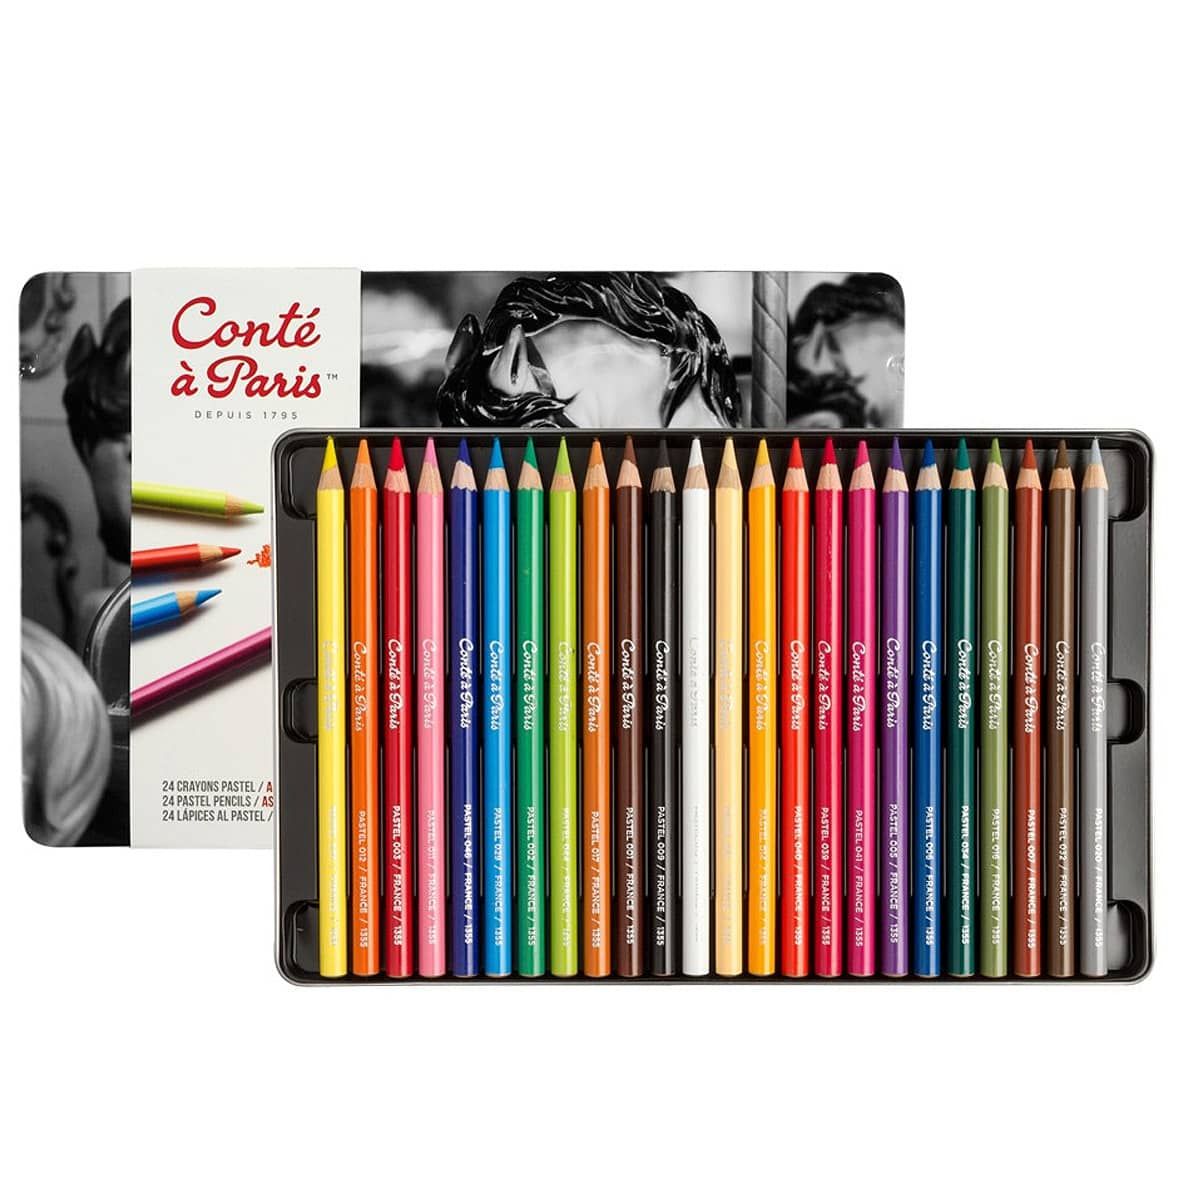 https://www.jerrysartarama.com/media/catalog/product/cache/ecb49a32eeb5603594b082bd5fe65733/c/o/conte-a-paris-pastel-pencil-set-24-assorted-colors-ls-11456_1.jpg